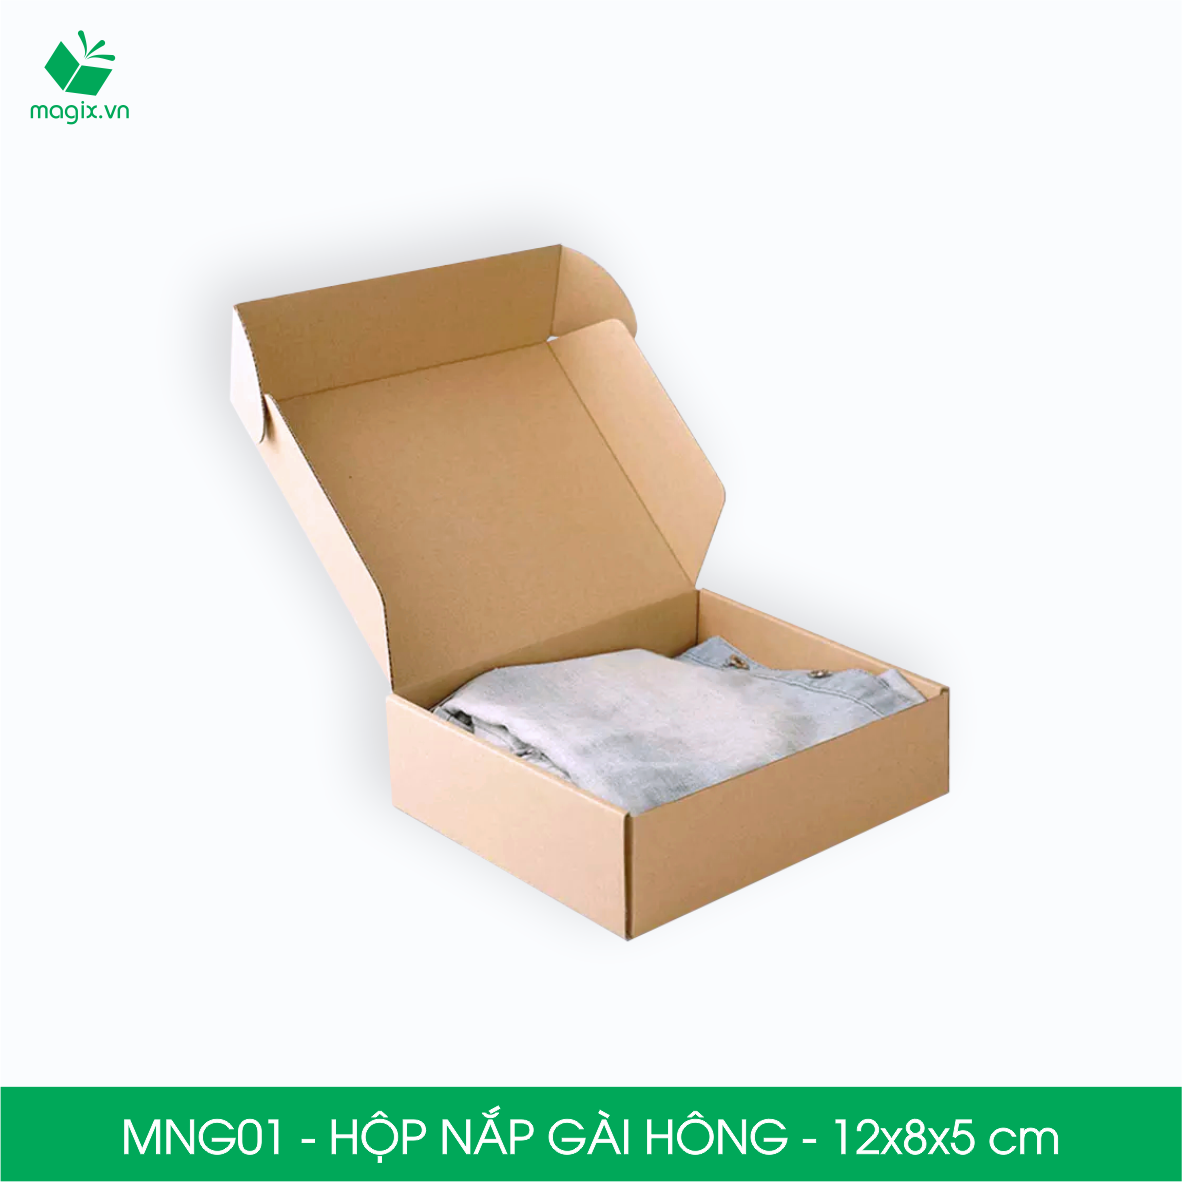 MNG01 - 12x8x5cm - Combo 60 hộp nắp gài hông - Thùng carton đóng hàng